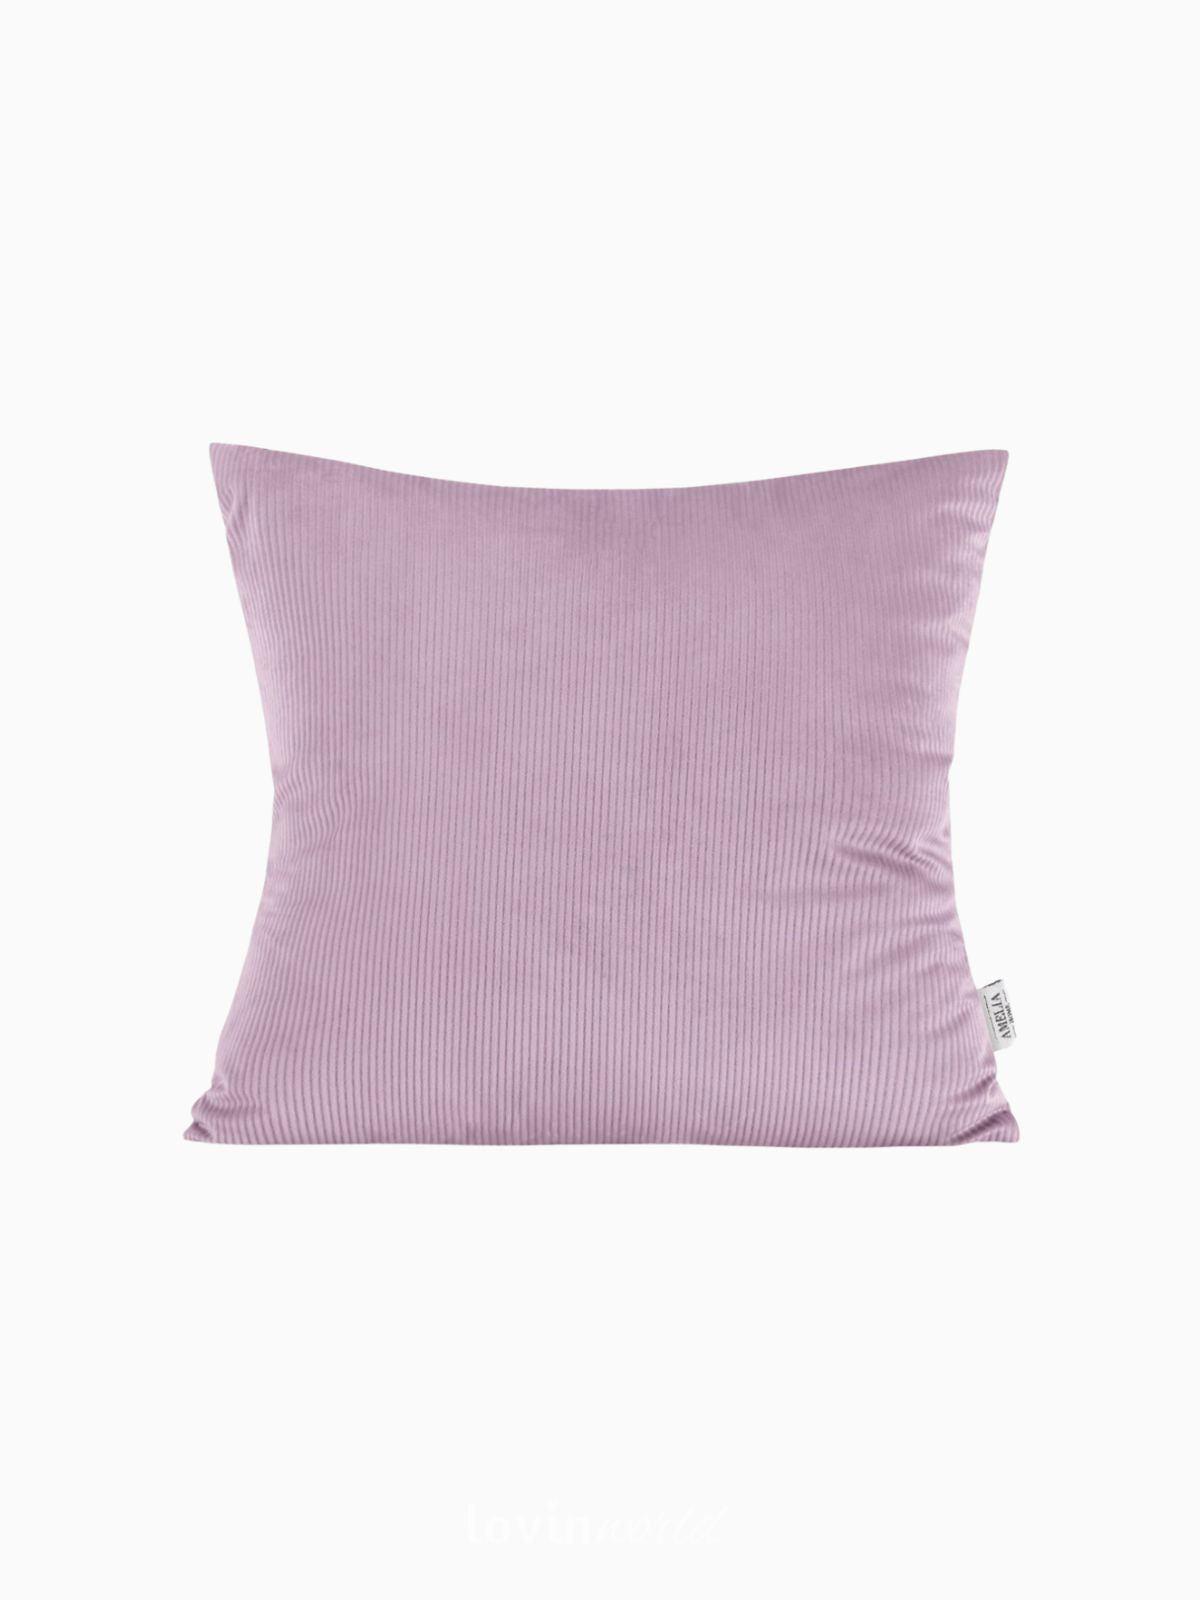 Cuscino decorativo in velluto Duffy, colore rosa 45x45 cm.-1